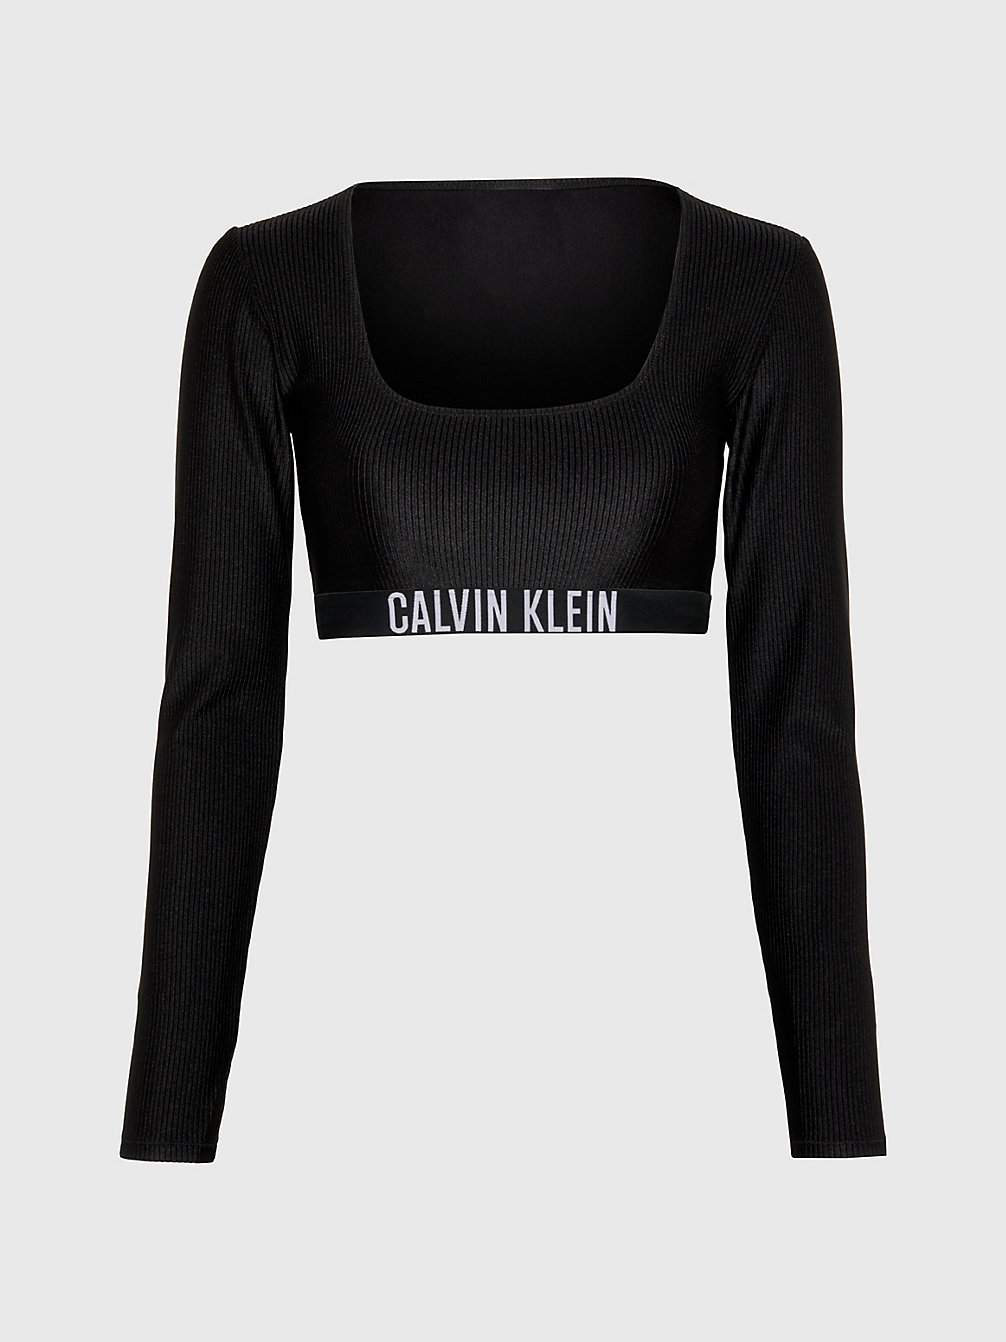 PVH BLACK > Góra Od Bikini Z Obcisłą Koszulką Sportową > undefined Kobiety - Calvin Klein